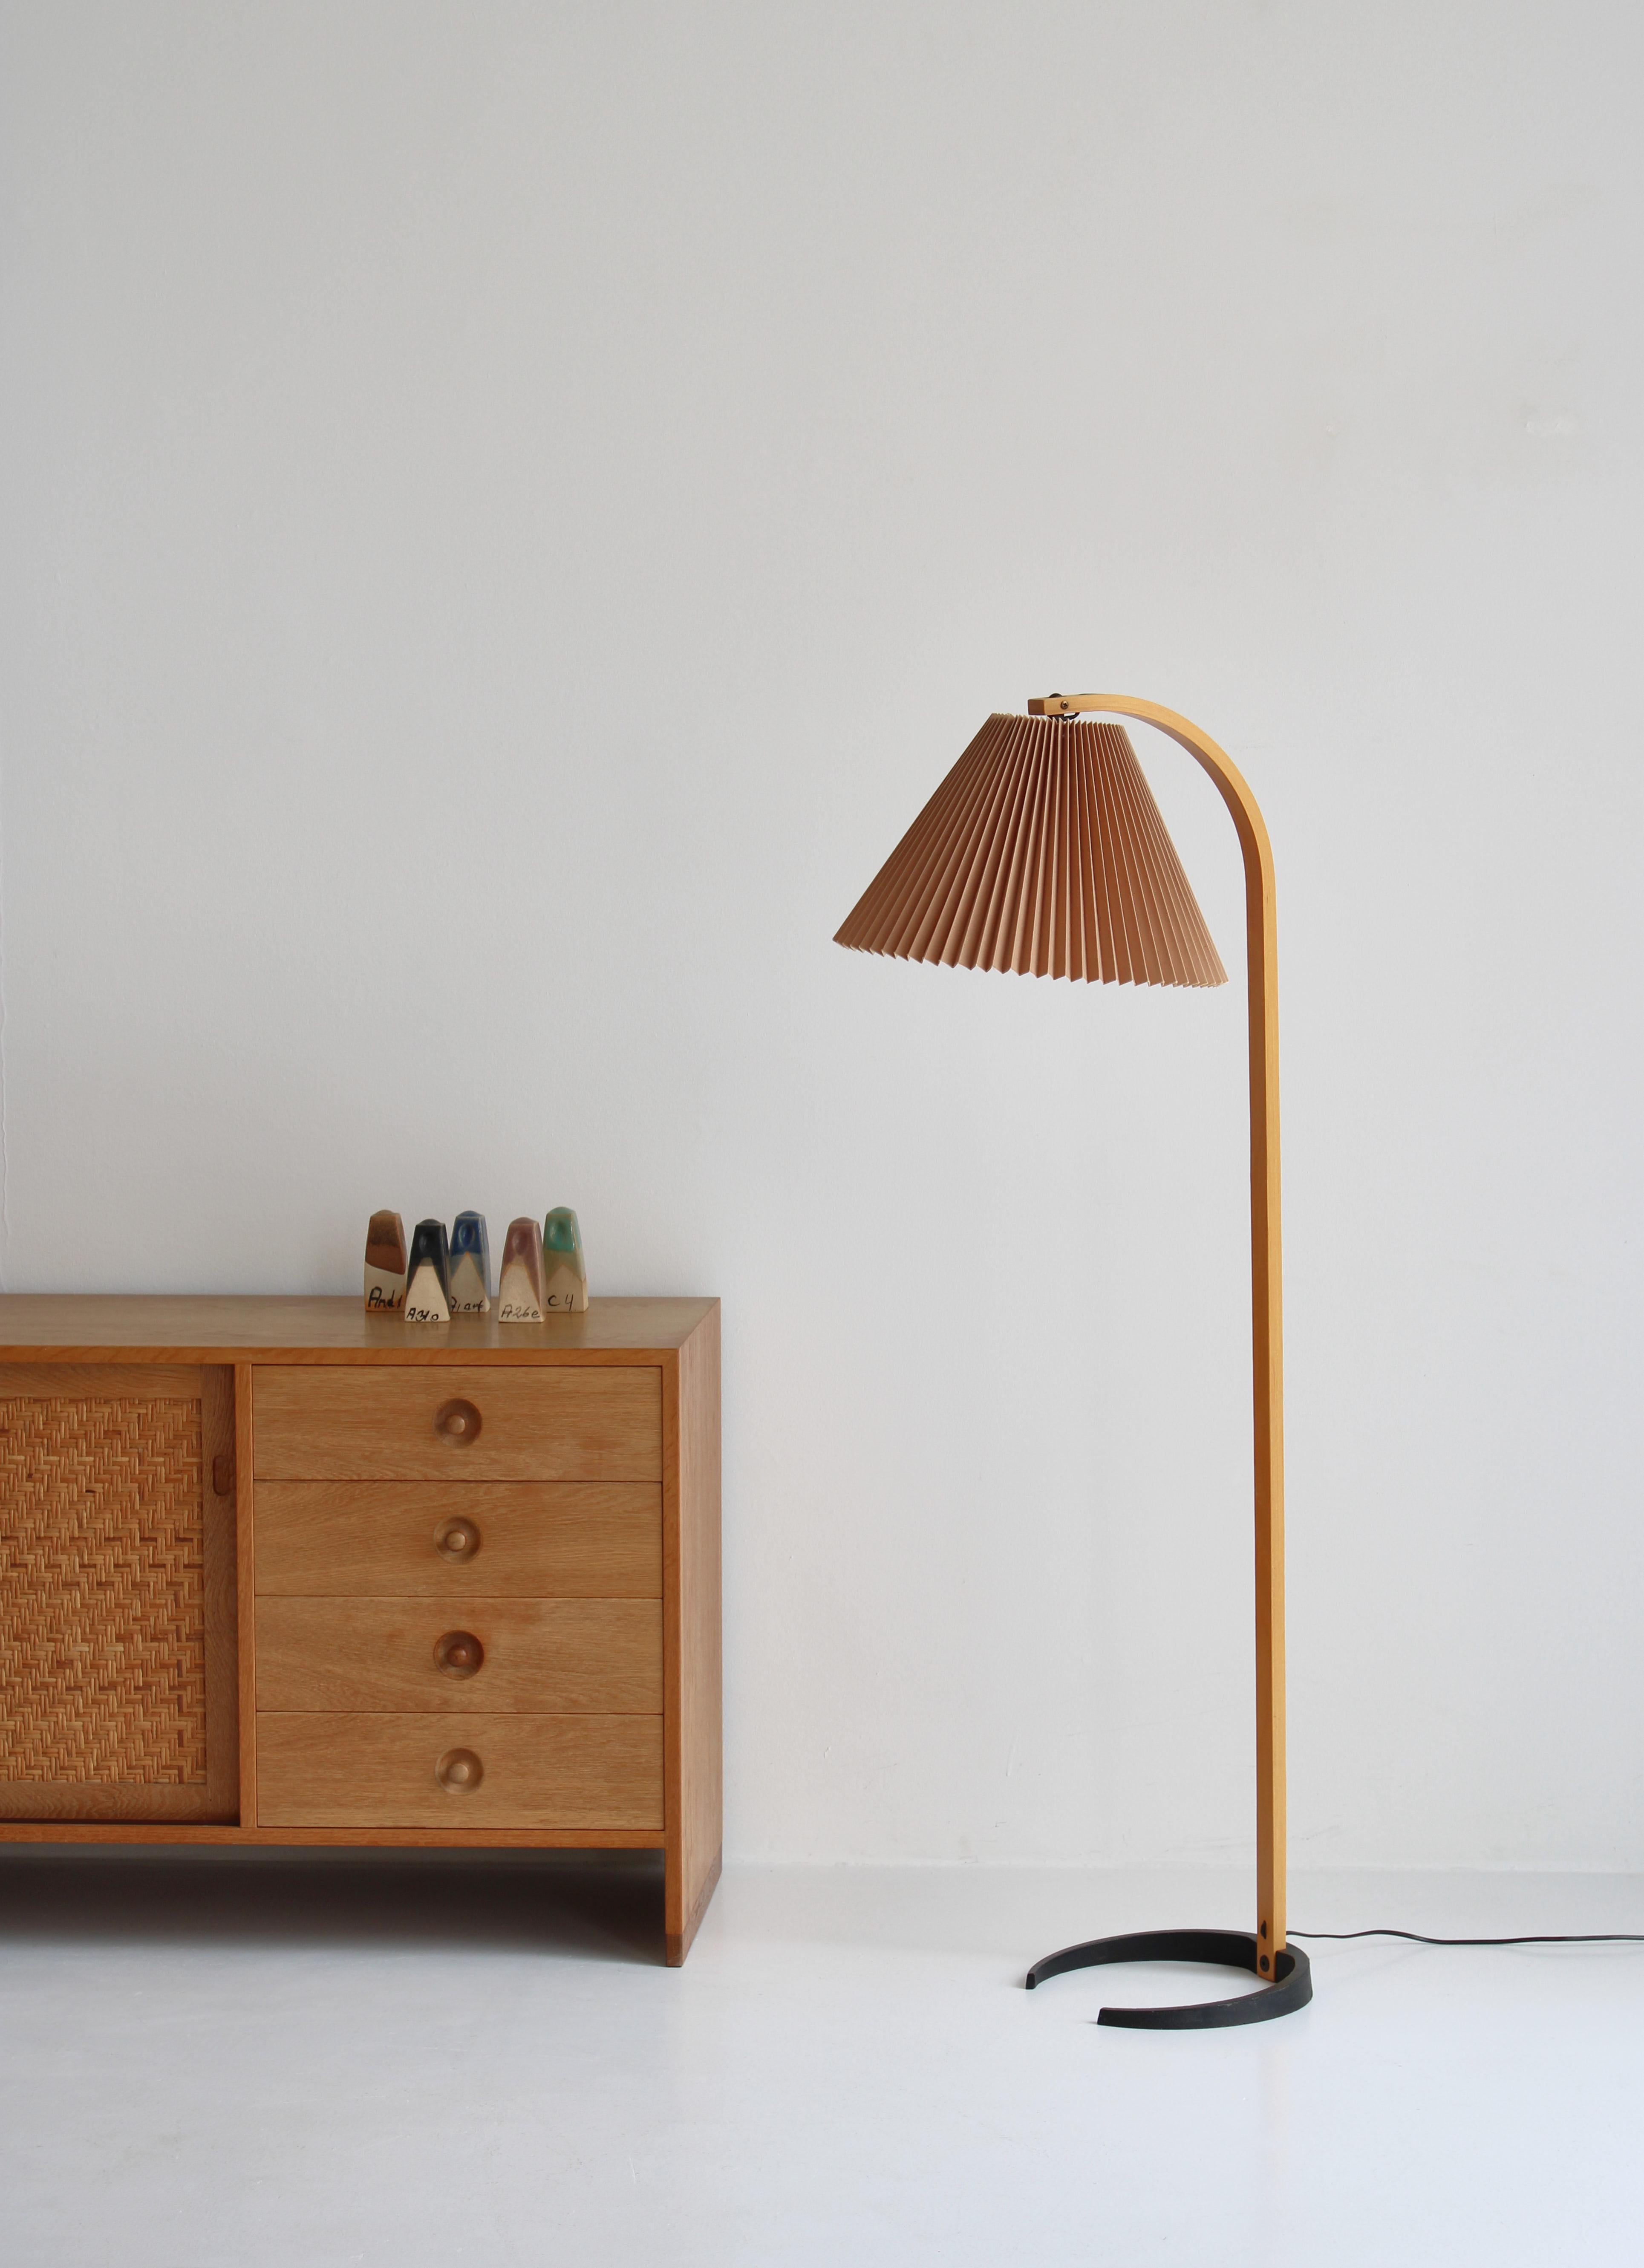 Original Caprani Lights Stehleuchte, entworfen vom dänischen Architekten Mads Caprani in den 1970er Jahren. Diese Vintage-Lampe verfügt über einen skulpturalen Ständer aus gebogenem Sperrholz mit einer eleganten Kurve, einen halbmondförmigen Sockel